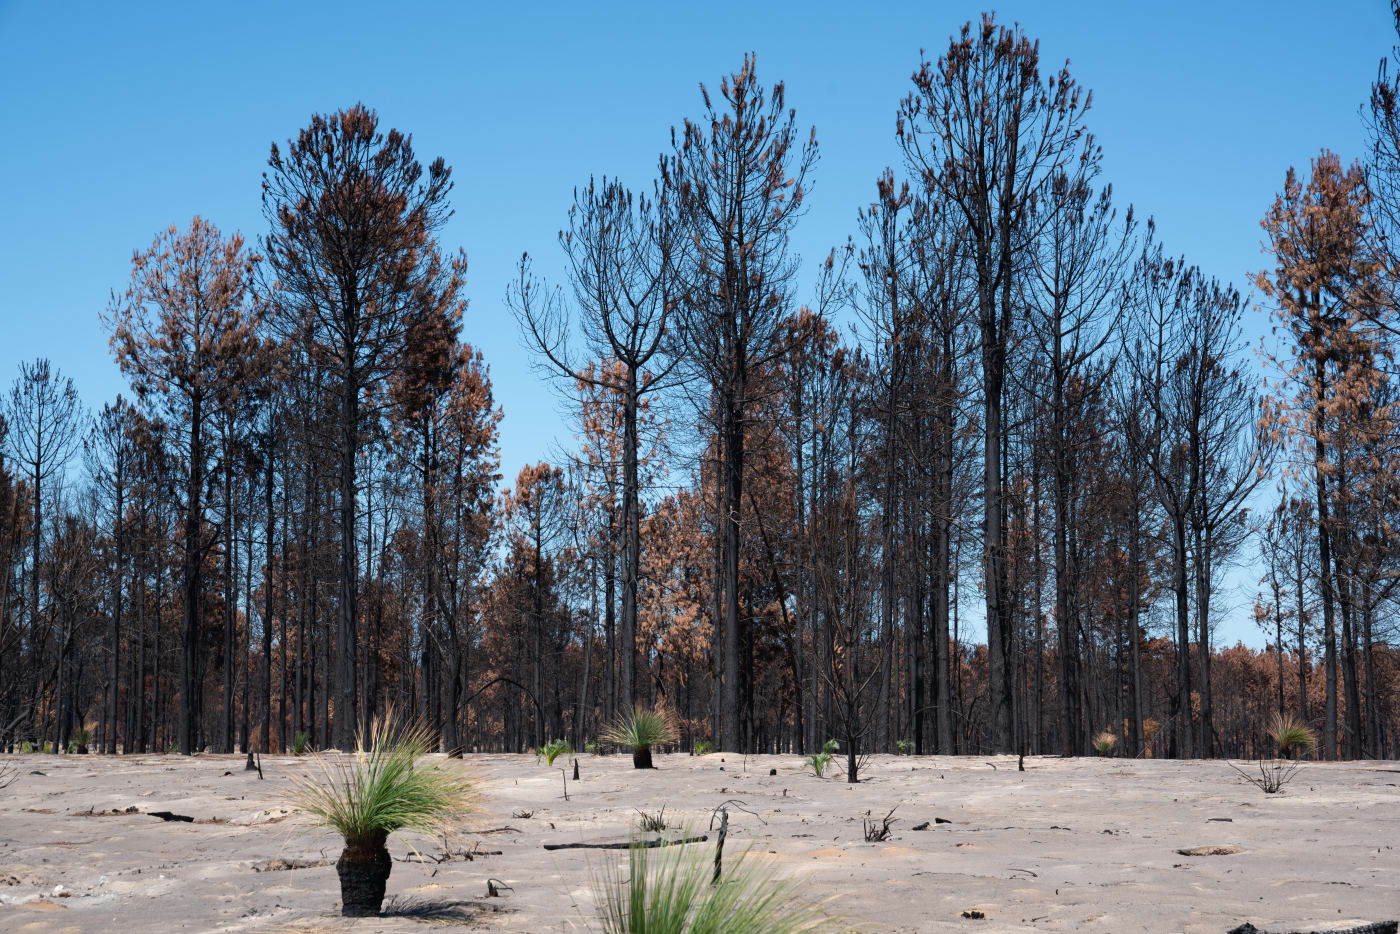 Bushfire affected landscape in Two Rocks, WA